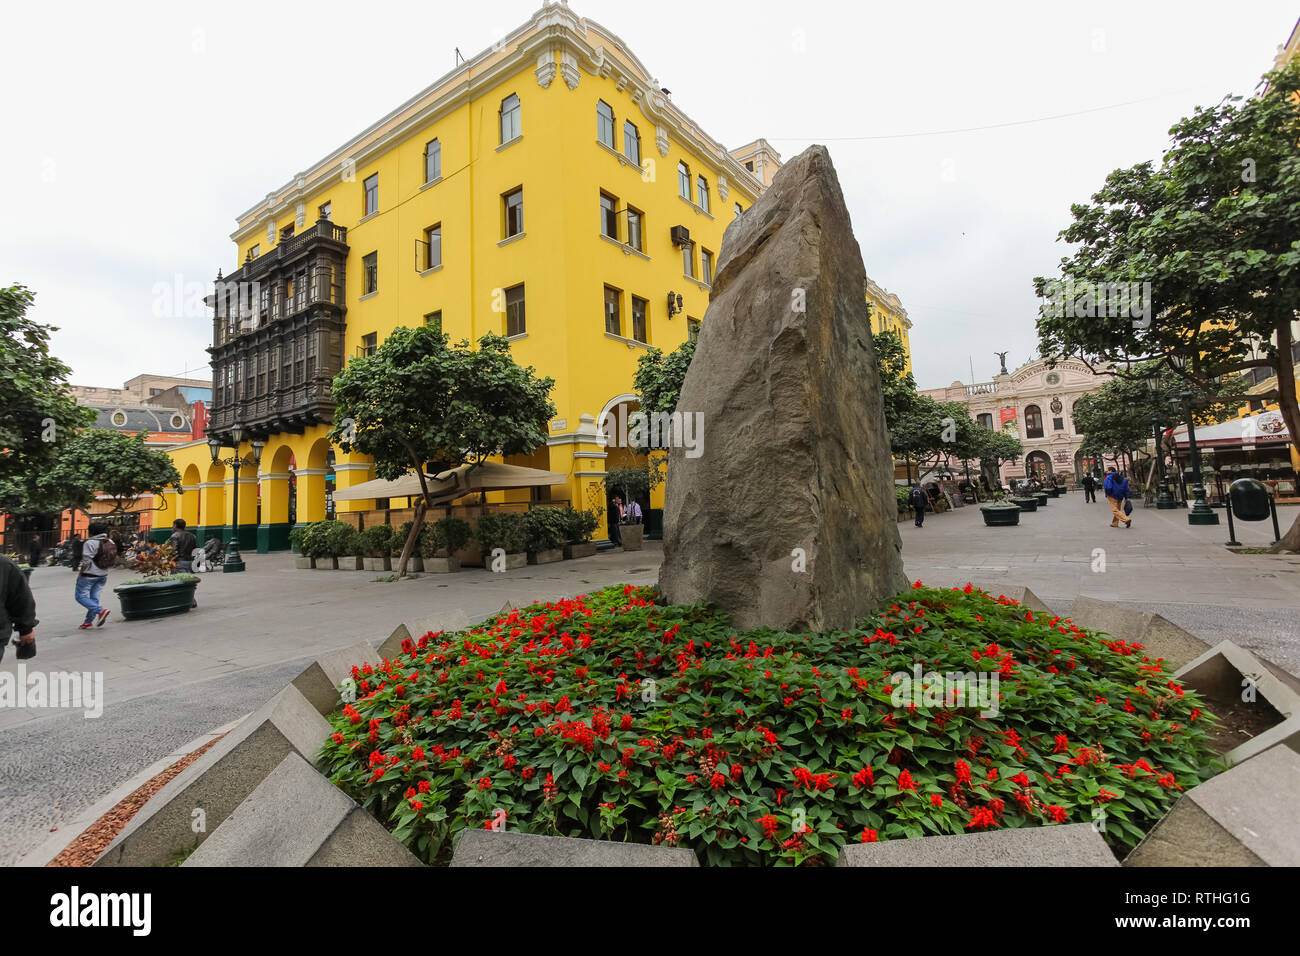 Lima Peru, Juni 2018: Wanka in Granodiorit, Anden basal Stein, Hommage der Stadt Lima der Taulichusco el Viejo, der letzte seiner einheimischen Herrscher. Stockfoto